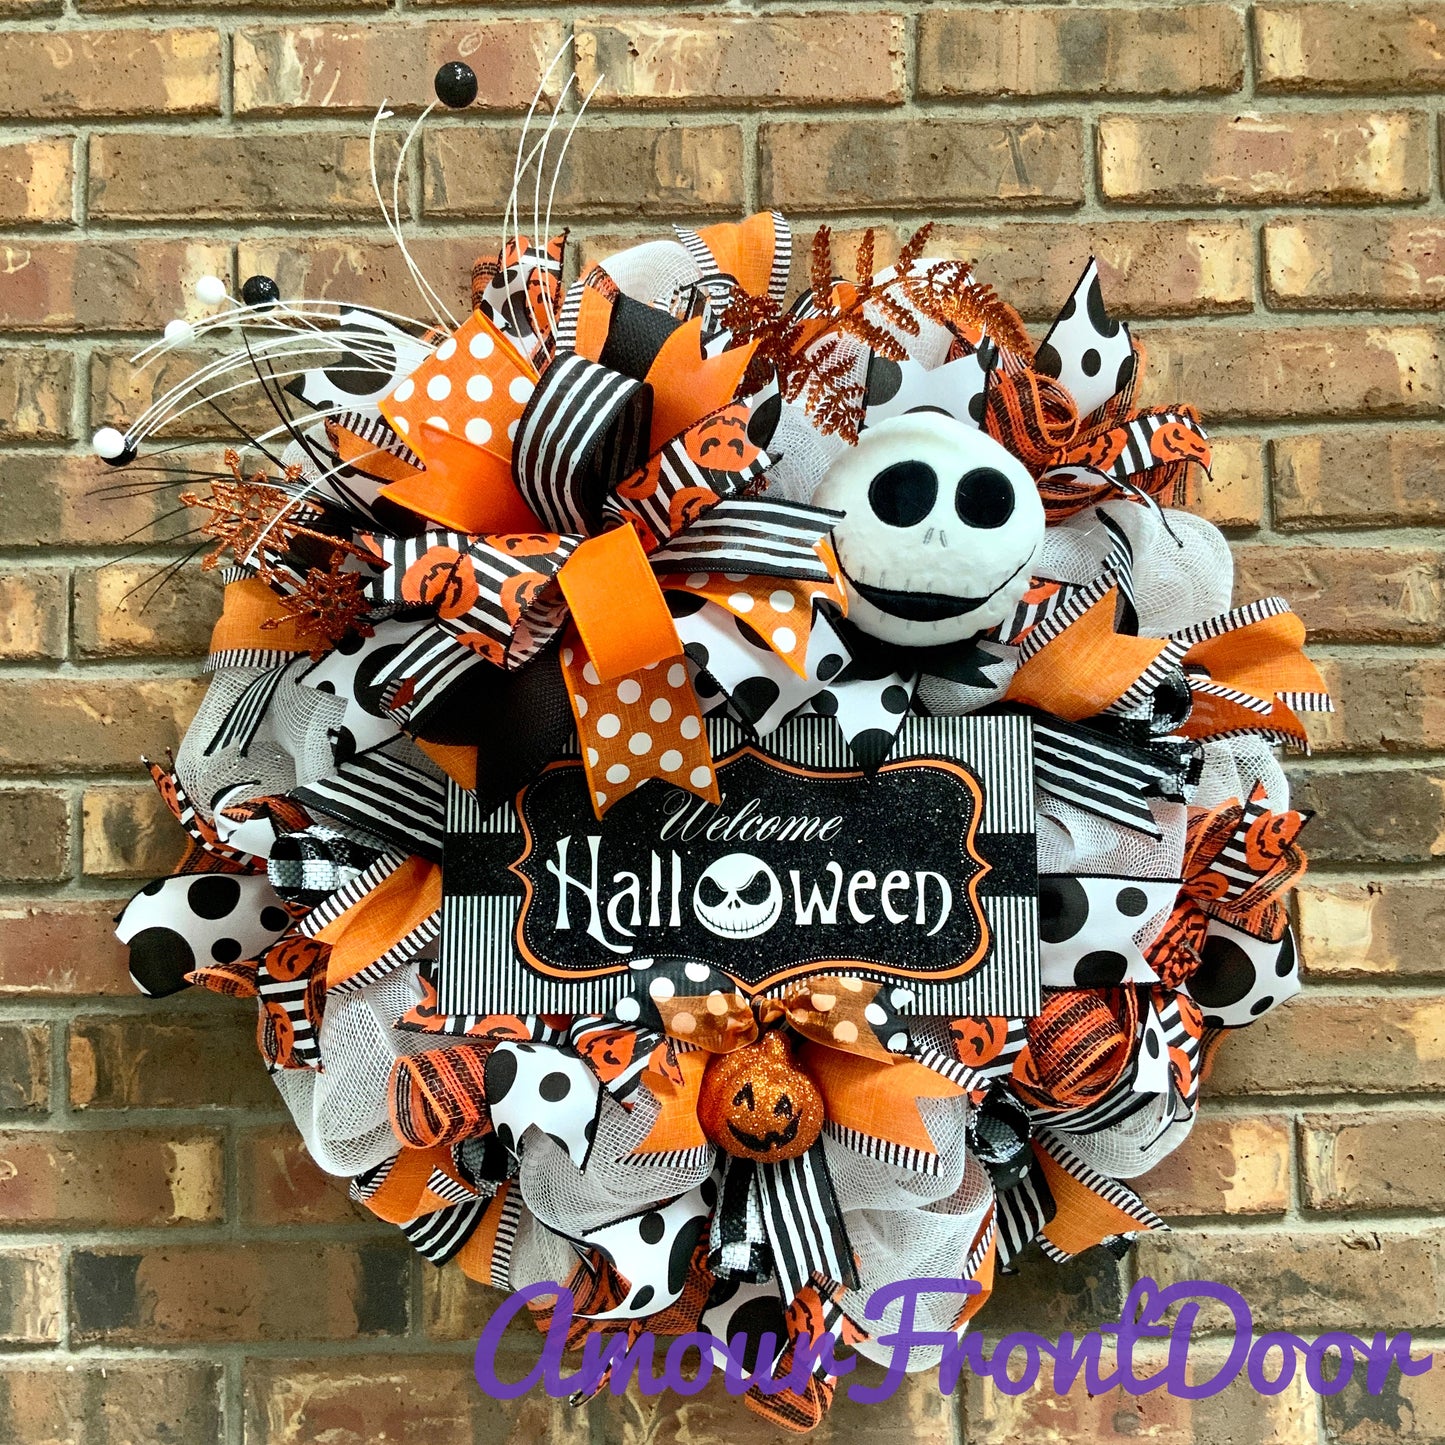 Halloween Welcome Wreath, Jack Skellington Wreath, Happy Halloween Decor, Halloween Jack Skellington Door Hanger